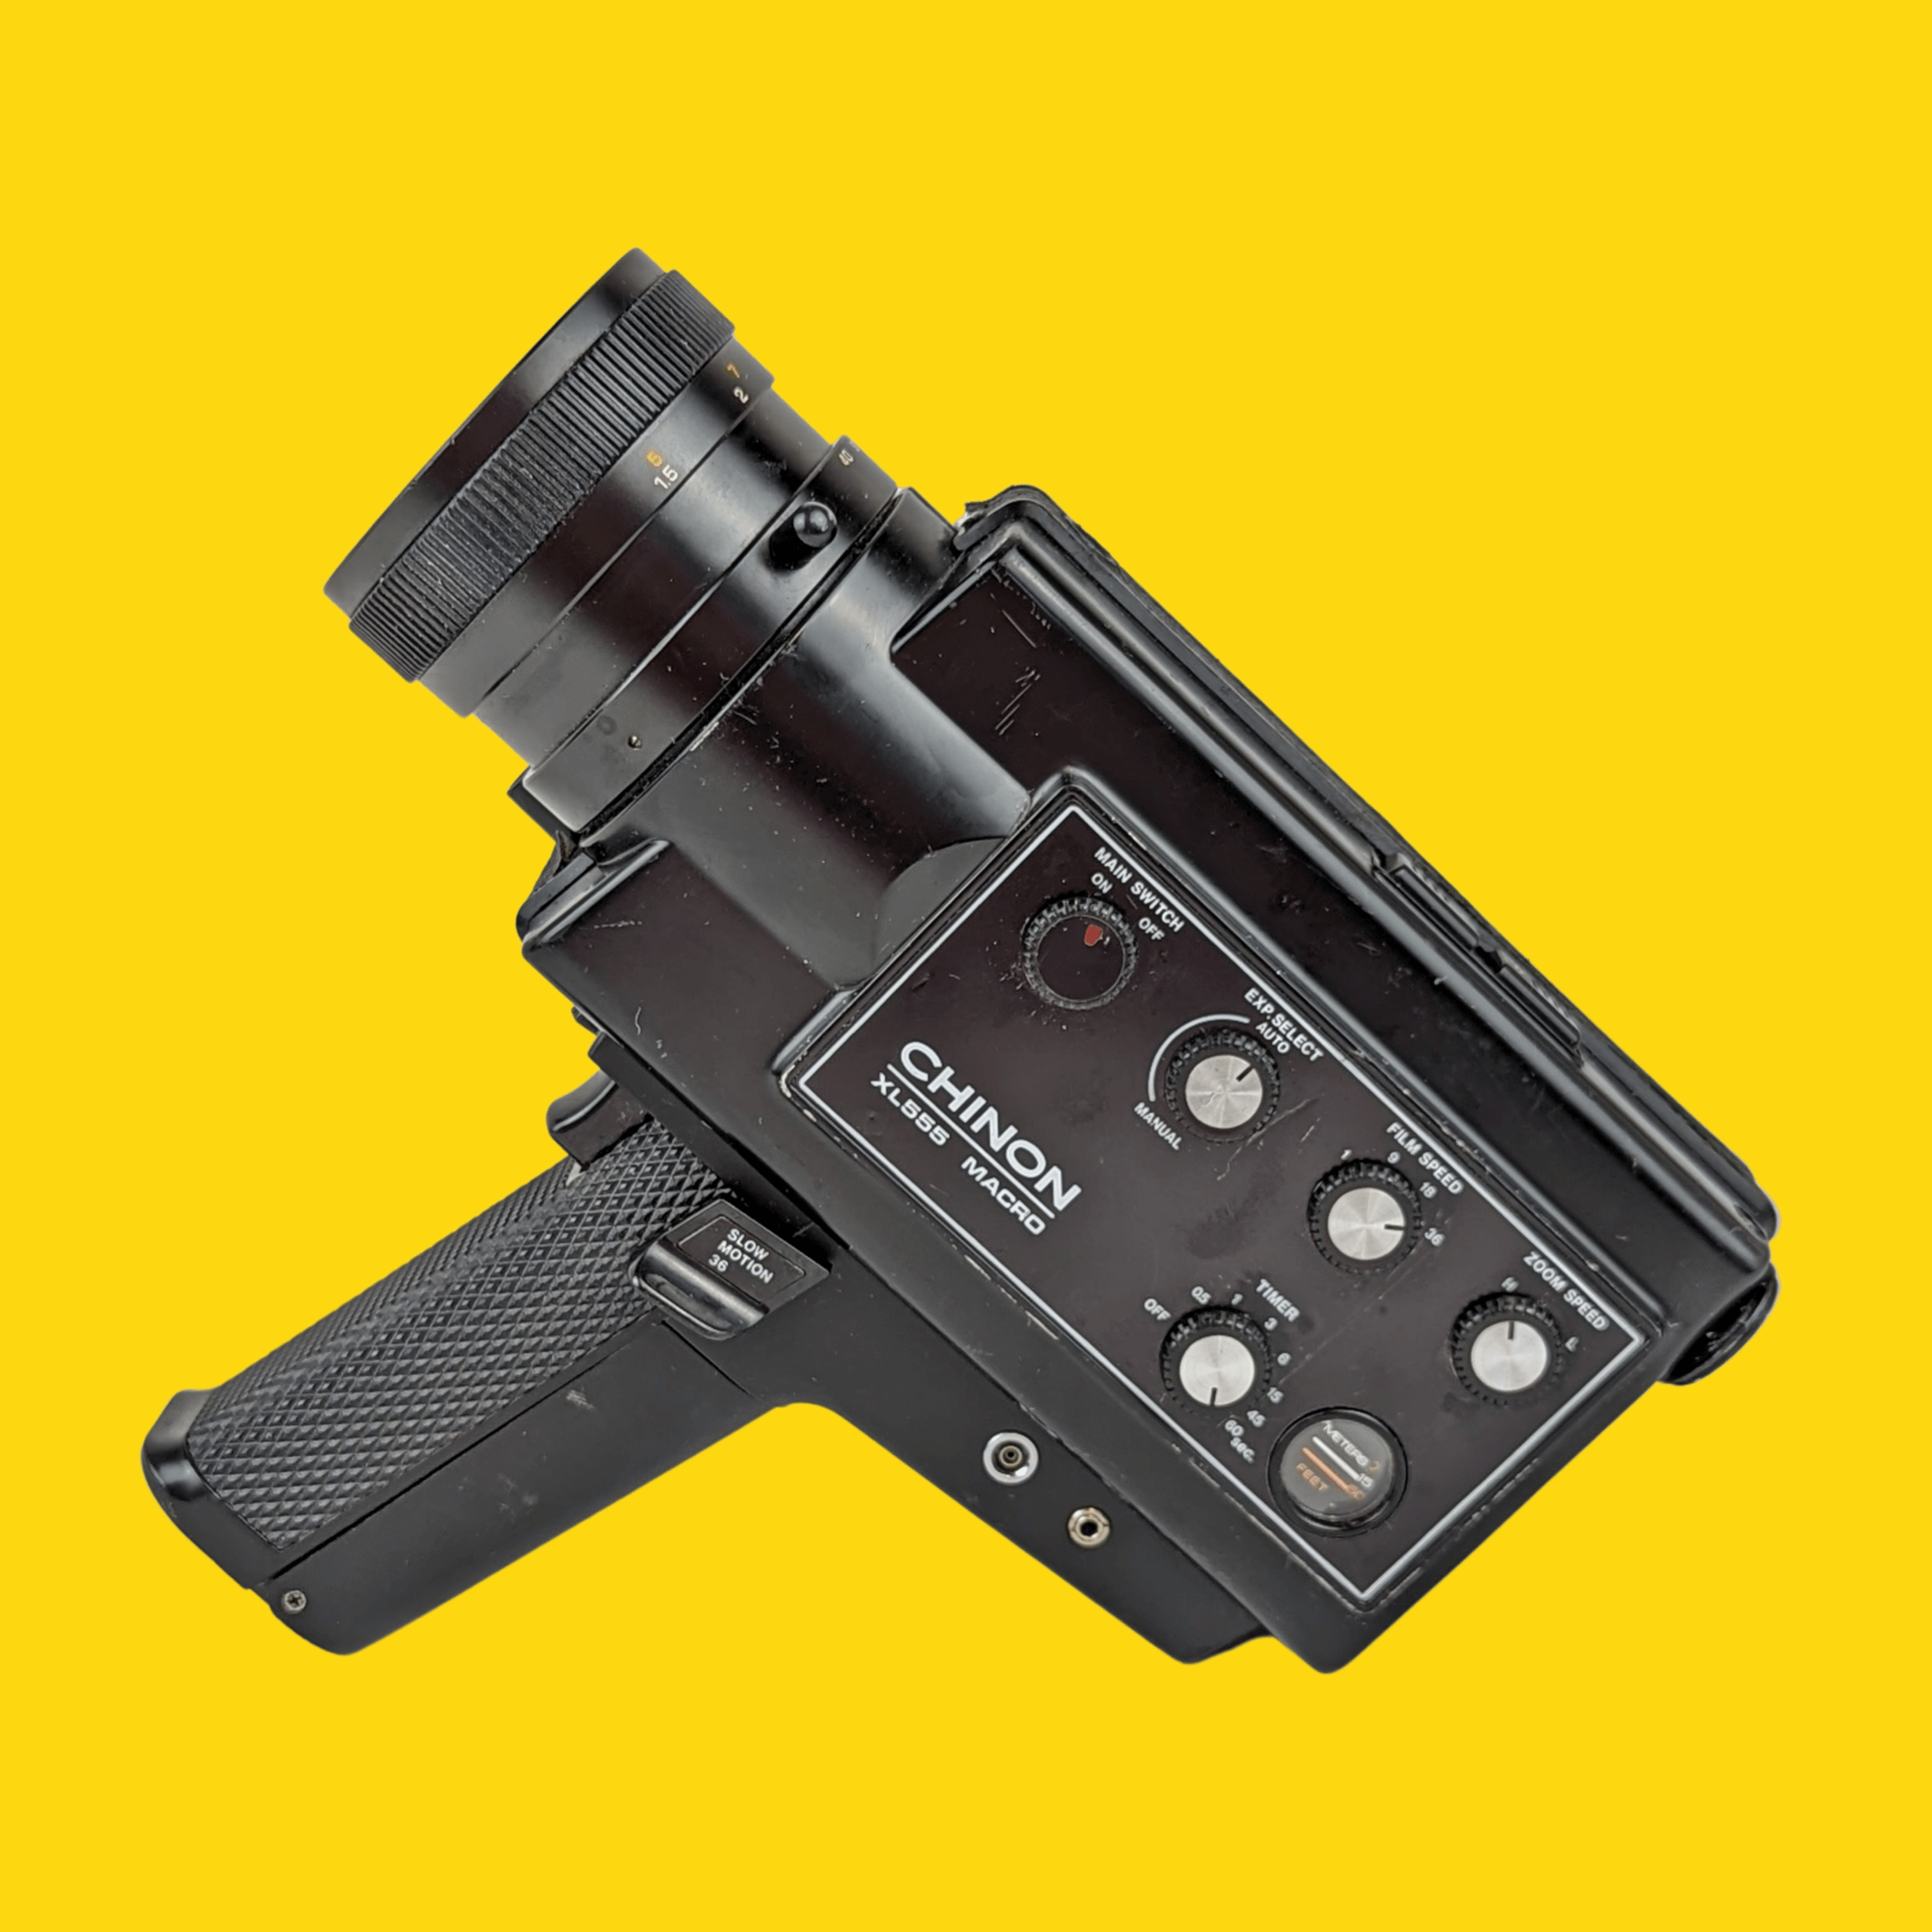 CHINON カメラ - フィルムカメラ